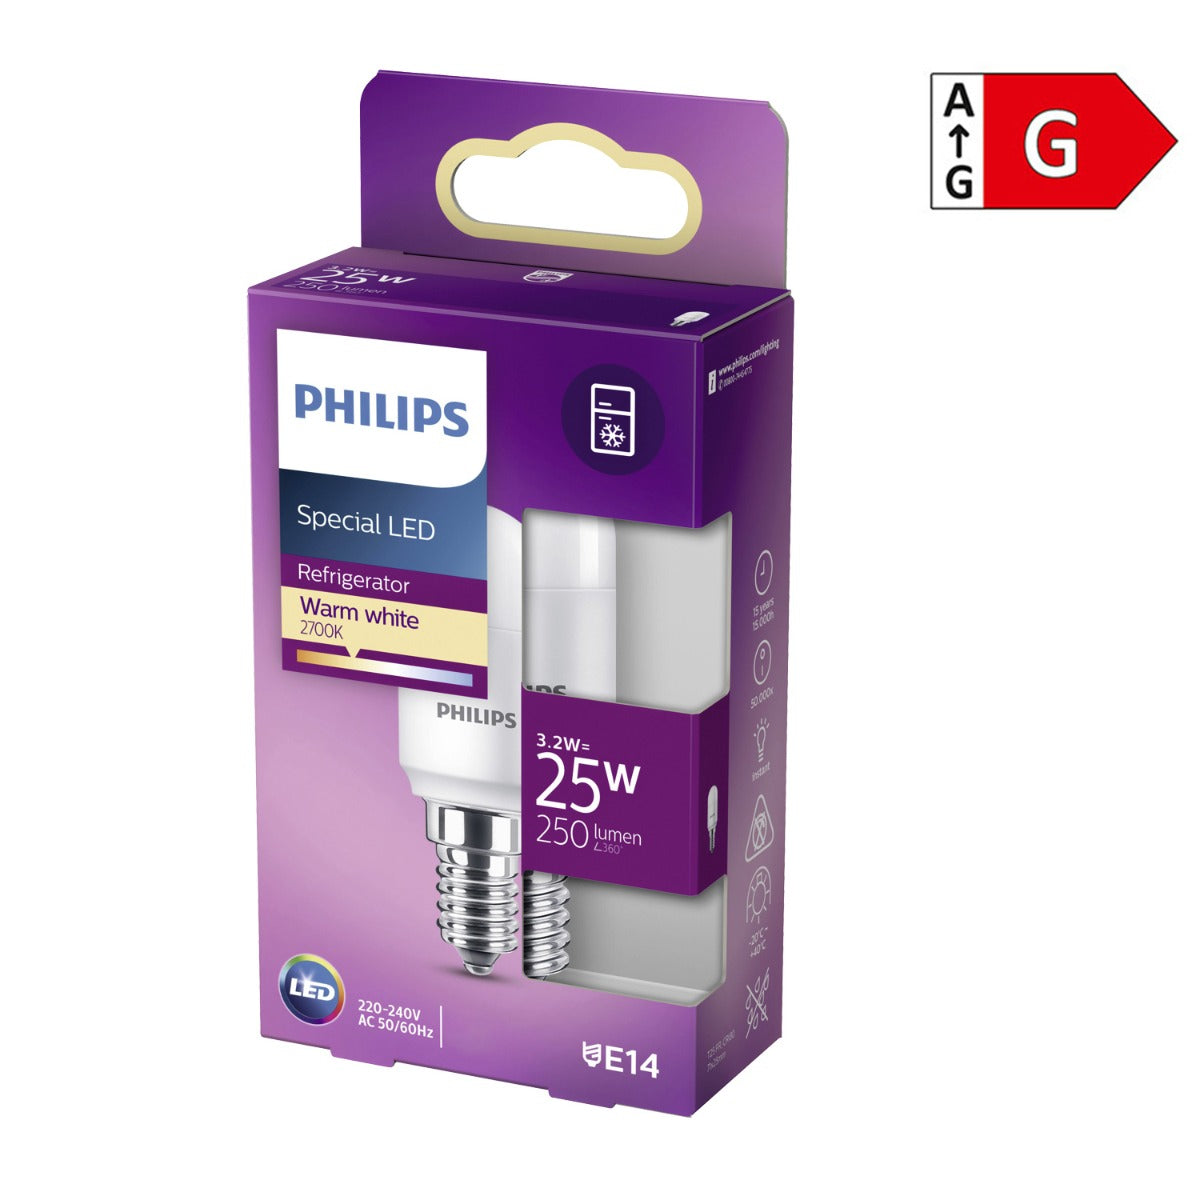 Philips LED Leuchtmittel E14 für Kühlschrank 3,2W (25W) warmweiß  [Energieklasse G]